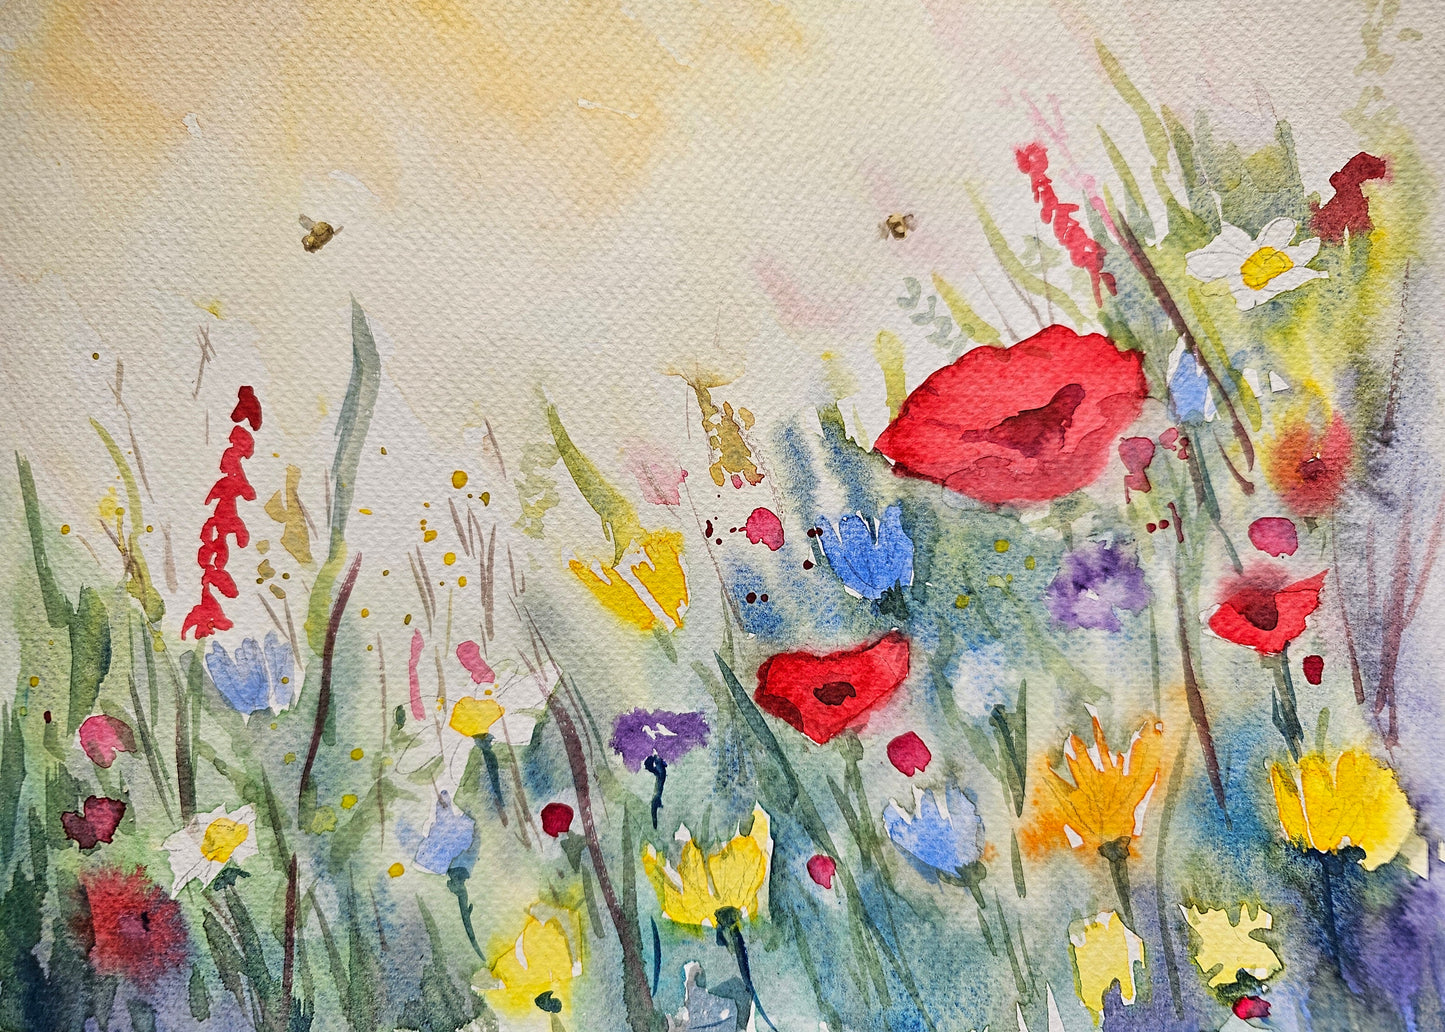 Flower meadow painting workshop- 3 June- 10 am